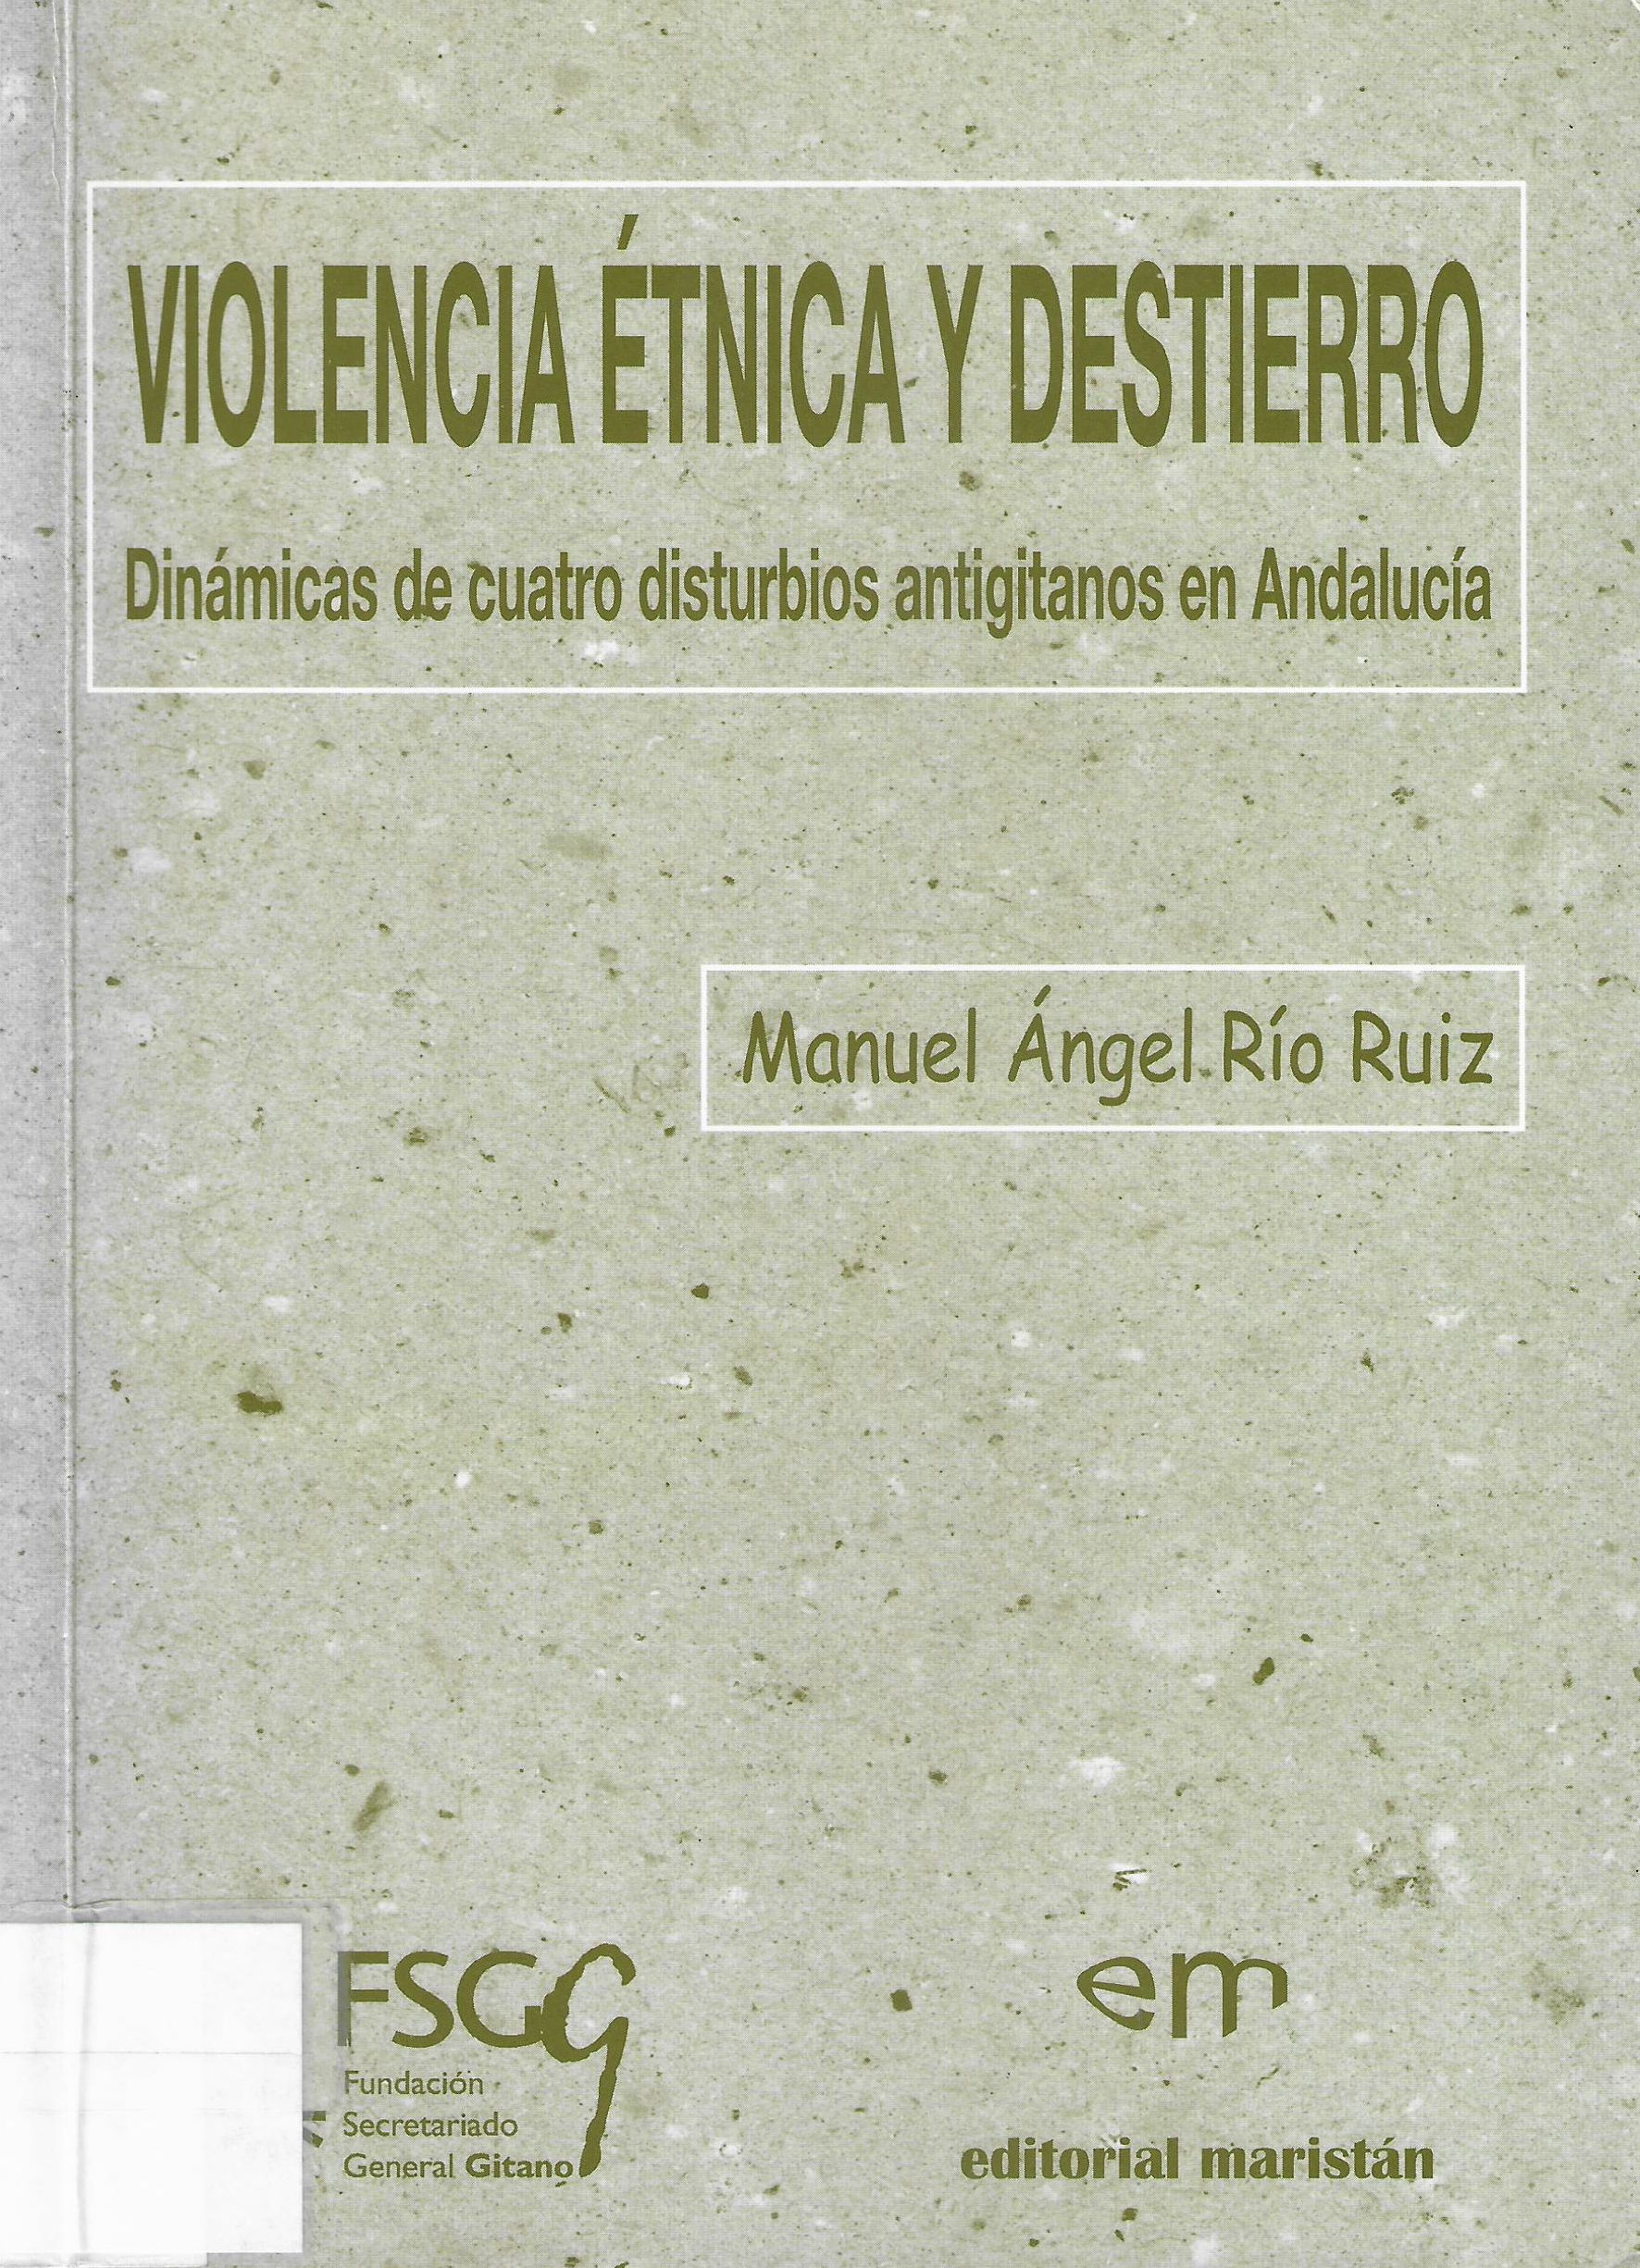 Imagen de portada del libro Violencia étnica y destierro